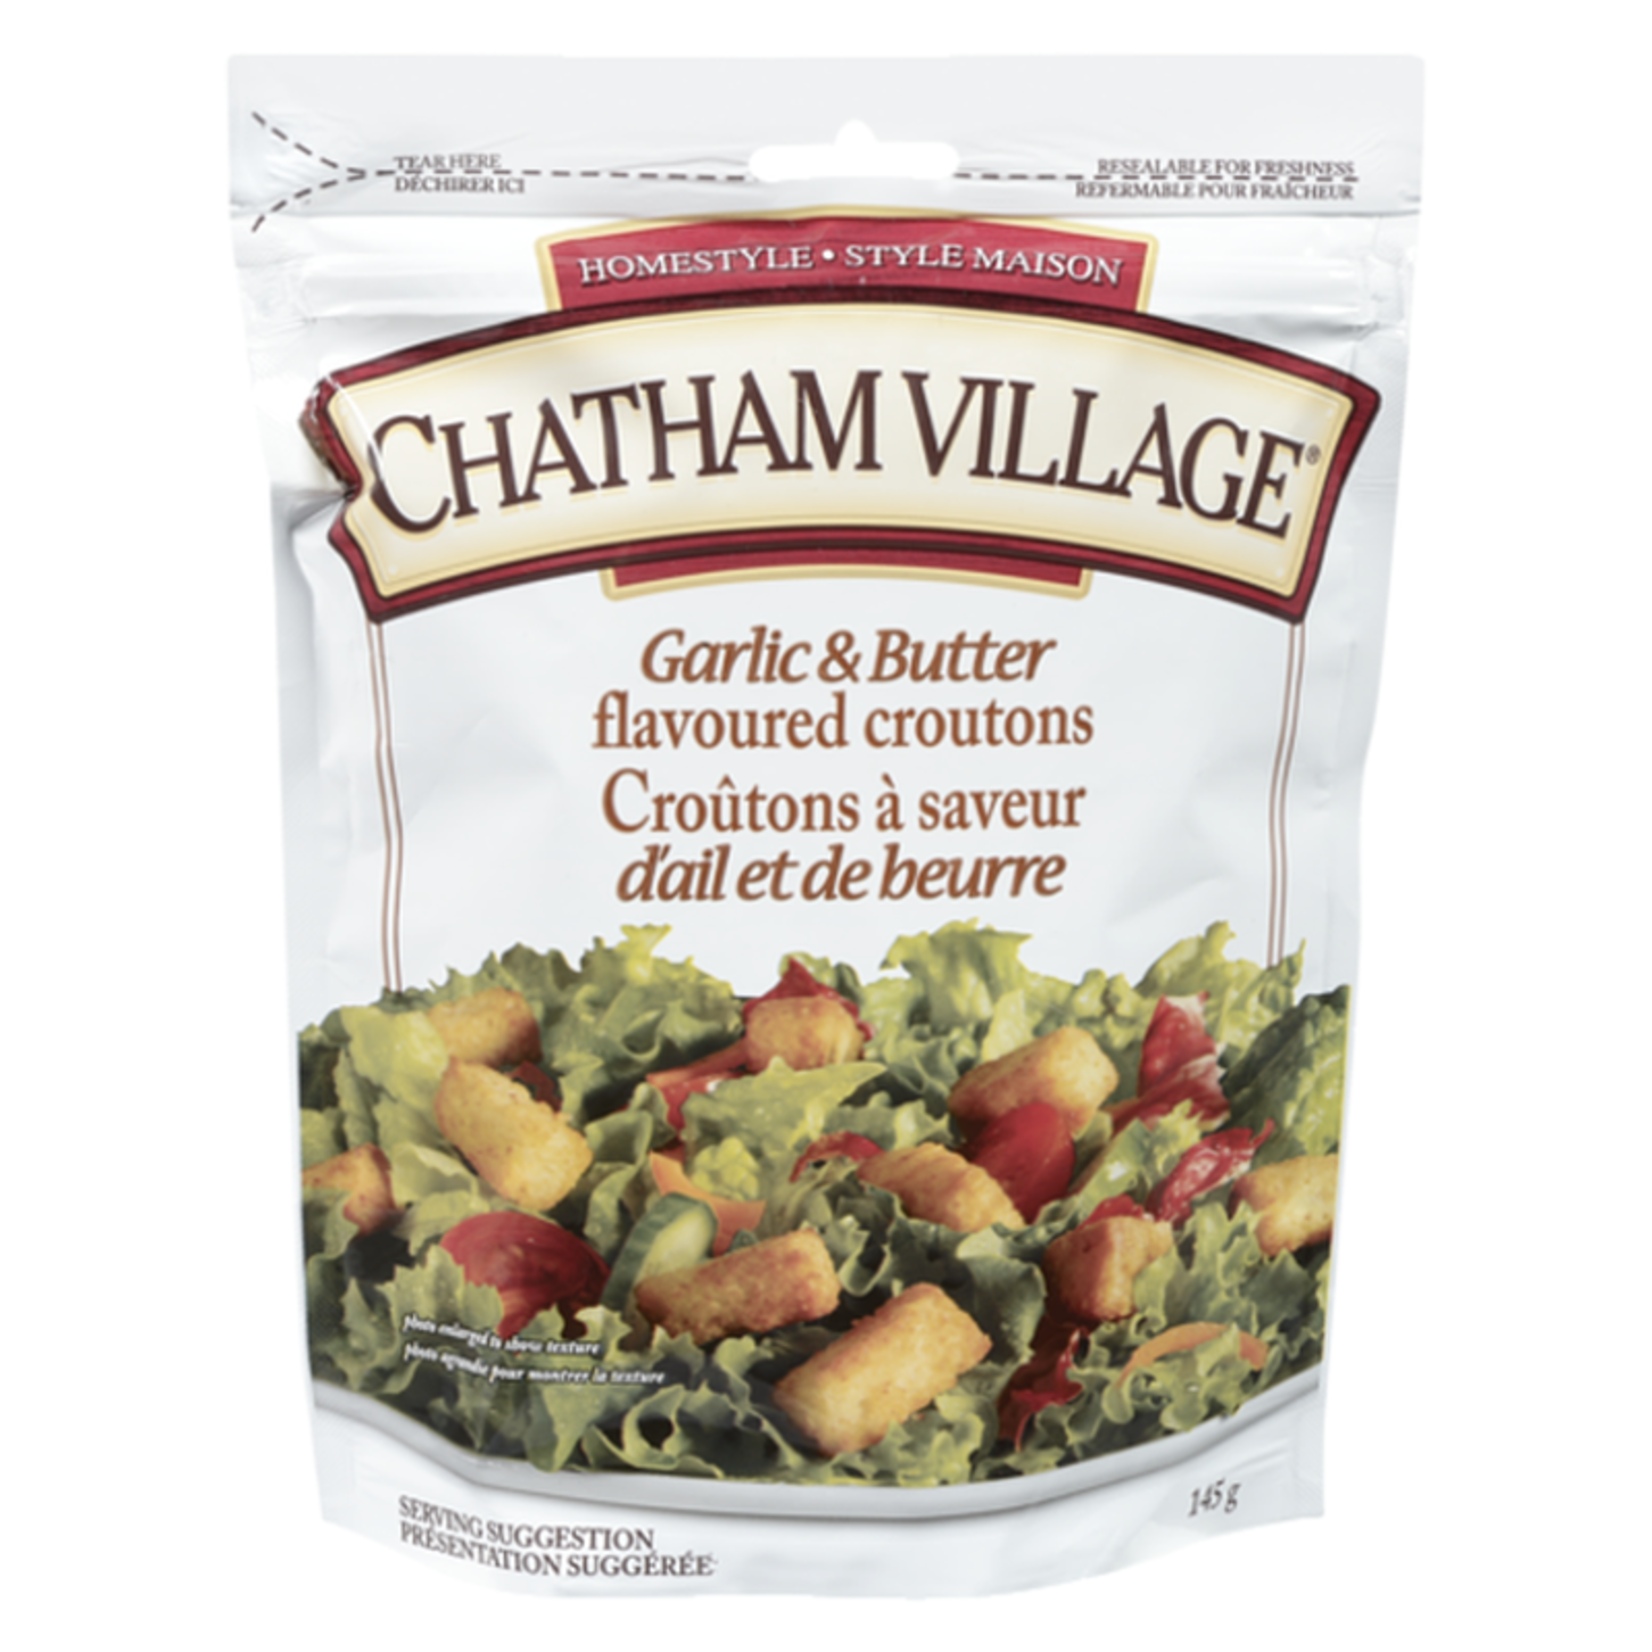 Chatham Village Chatham Village Croutons - Garlic & Butter 145g